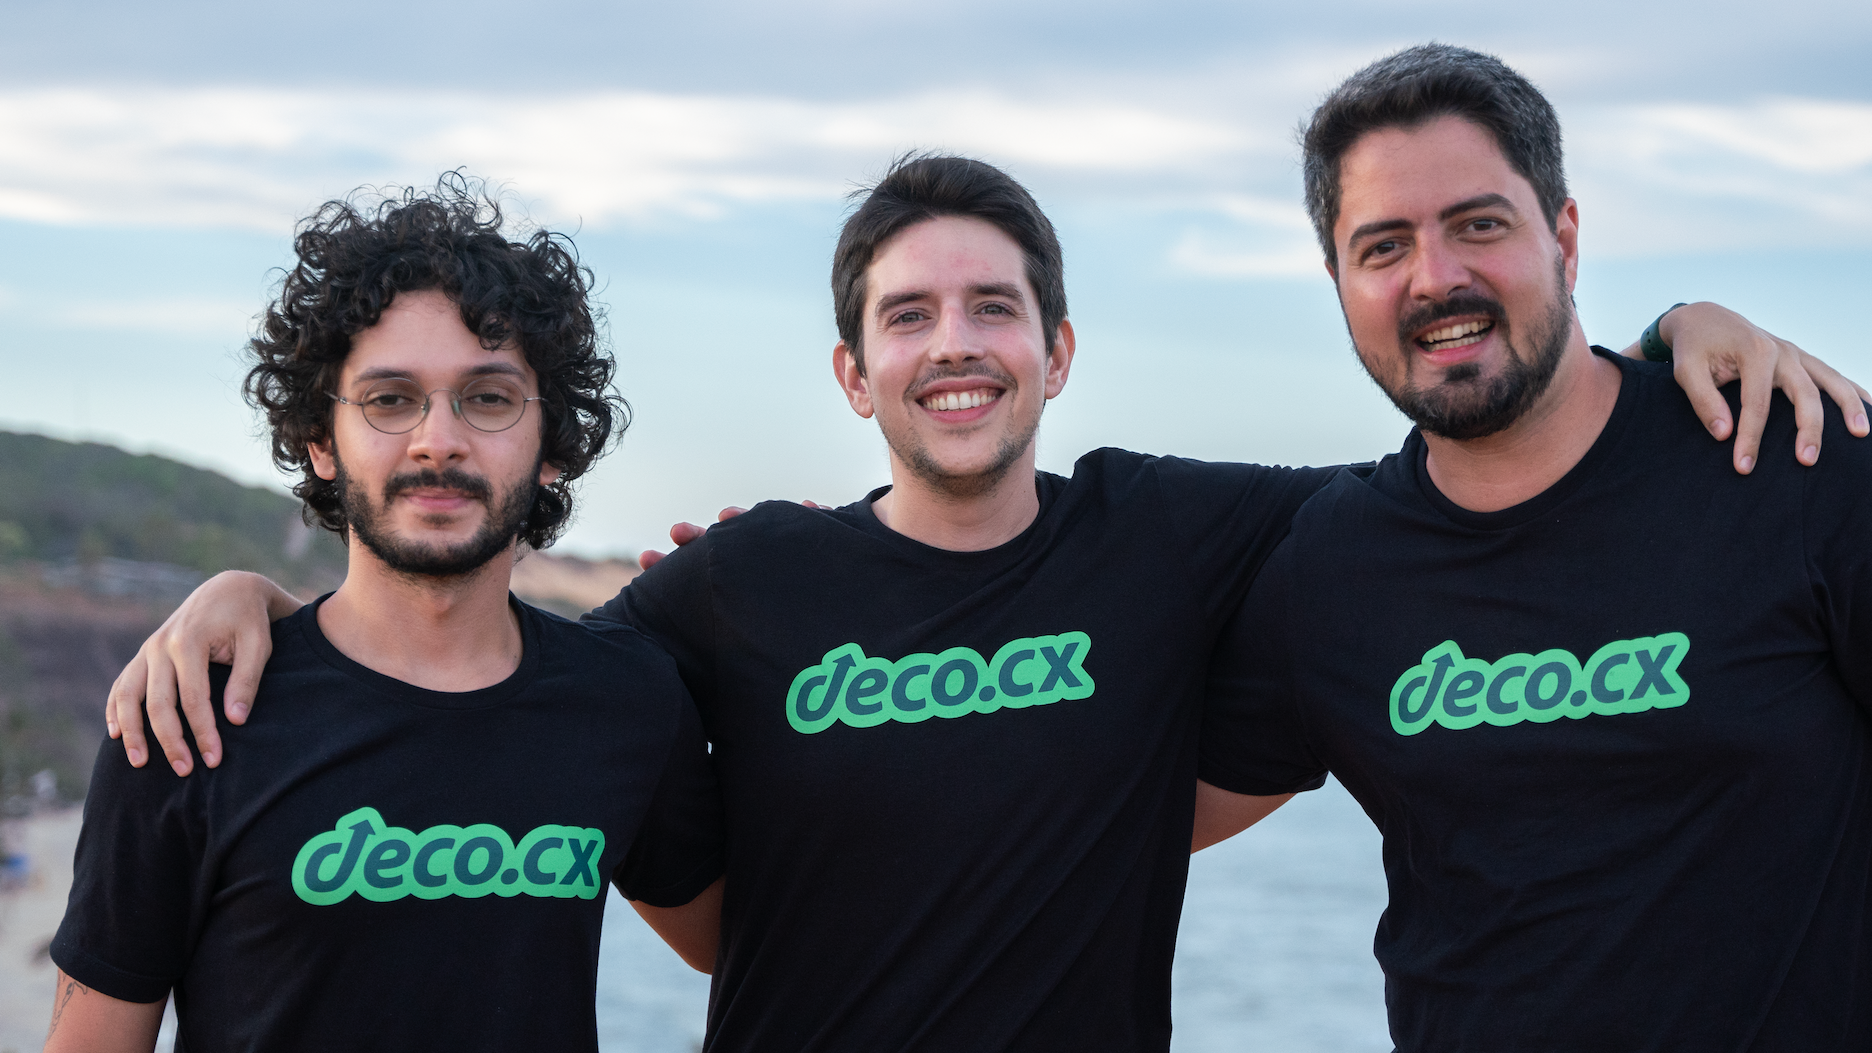 Deco.cx，电子商务，开源前端开发平台